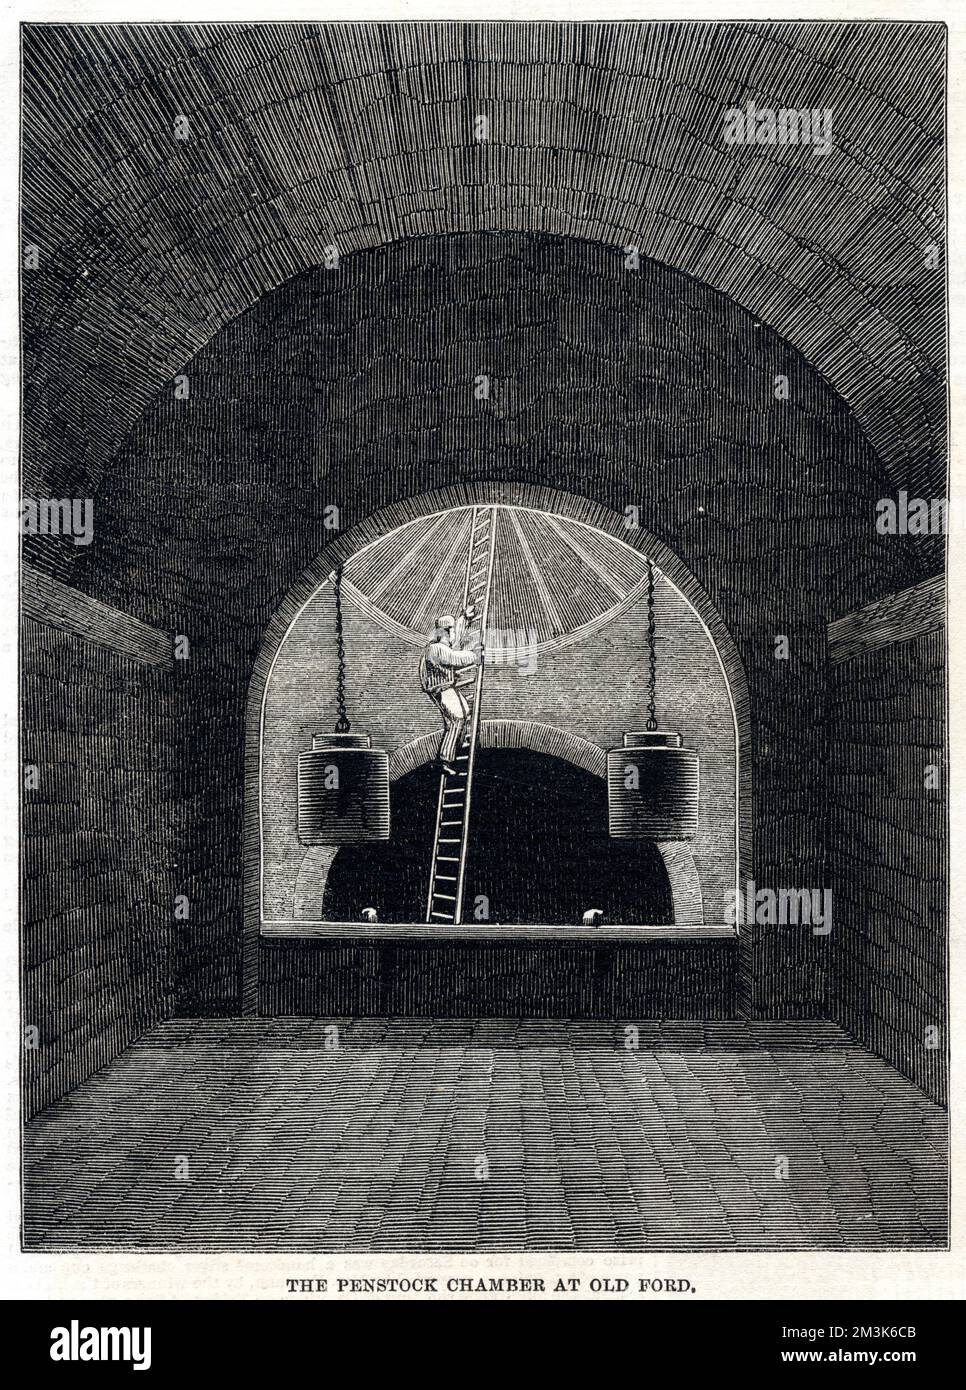 Das Innere der Penstock-Kammer in der Kanalisation von Old Ford, London, 1861. Penstock-Kammern haben in der Regel große, bewegliche wasserdichte Türen und werden zur Steuerung des Materialflusses in Abflüssen und Abwasserkanälen verwendet. Datum: 1861 Stockfoto